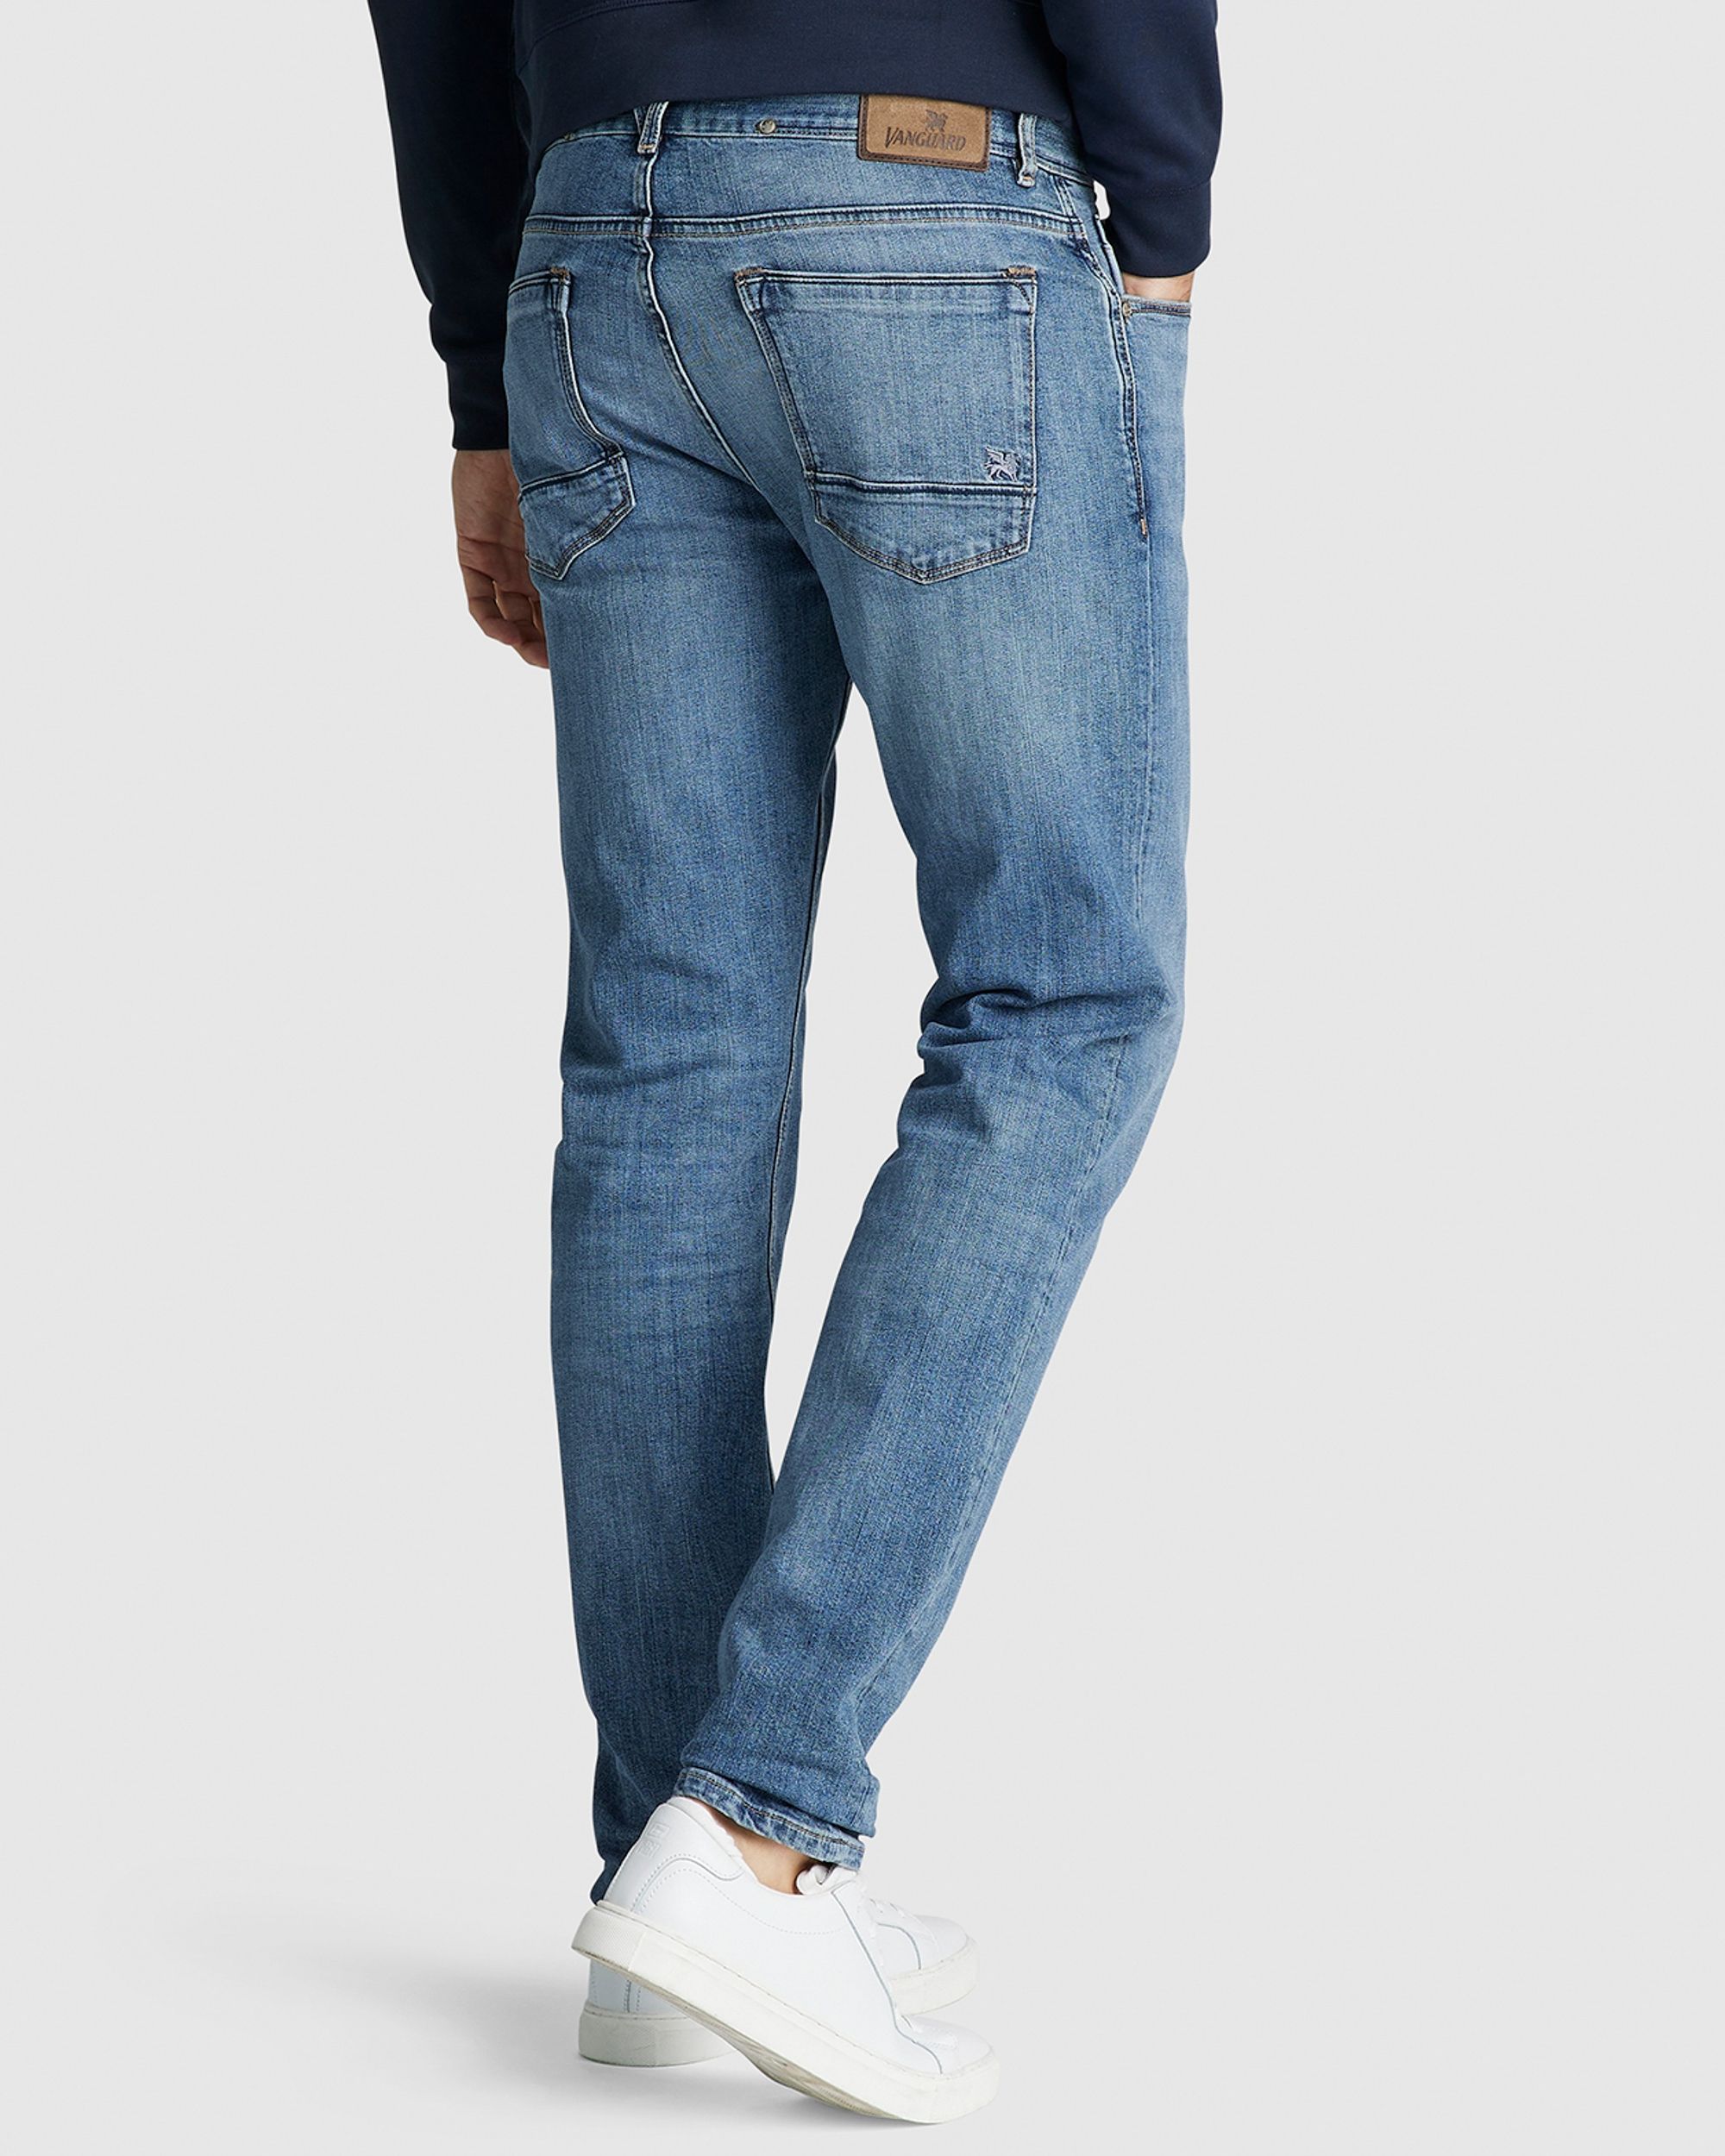 Actuator Makkelijk in de omgang stil Vanguard V7 Rider Jeans | Shop nu - Only for Men